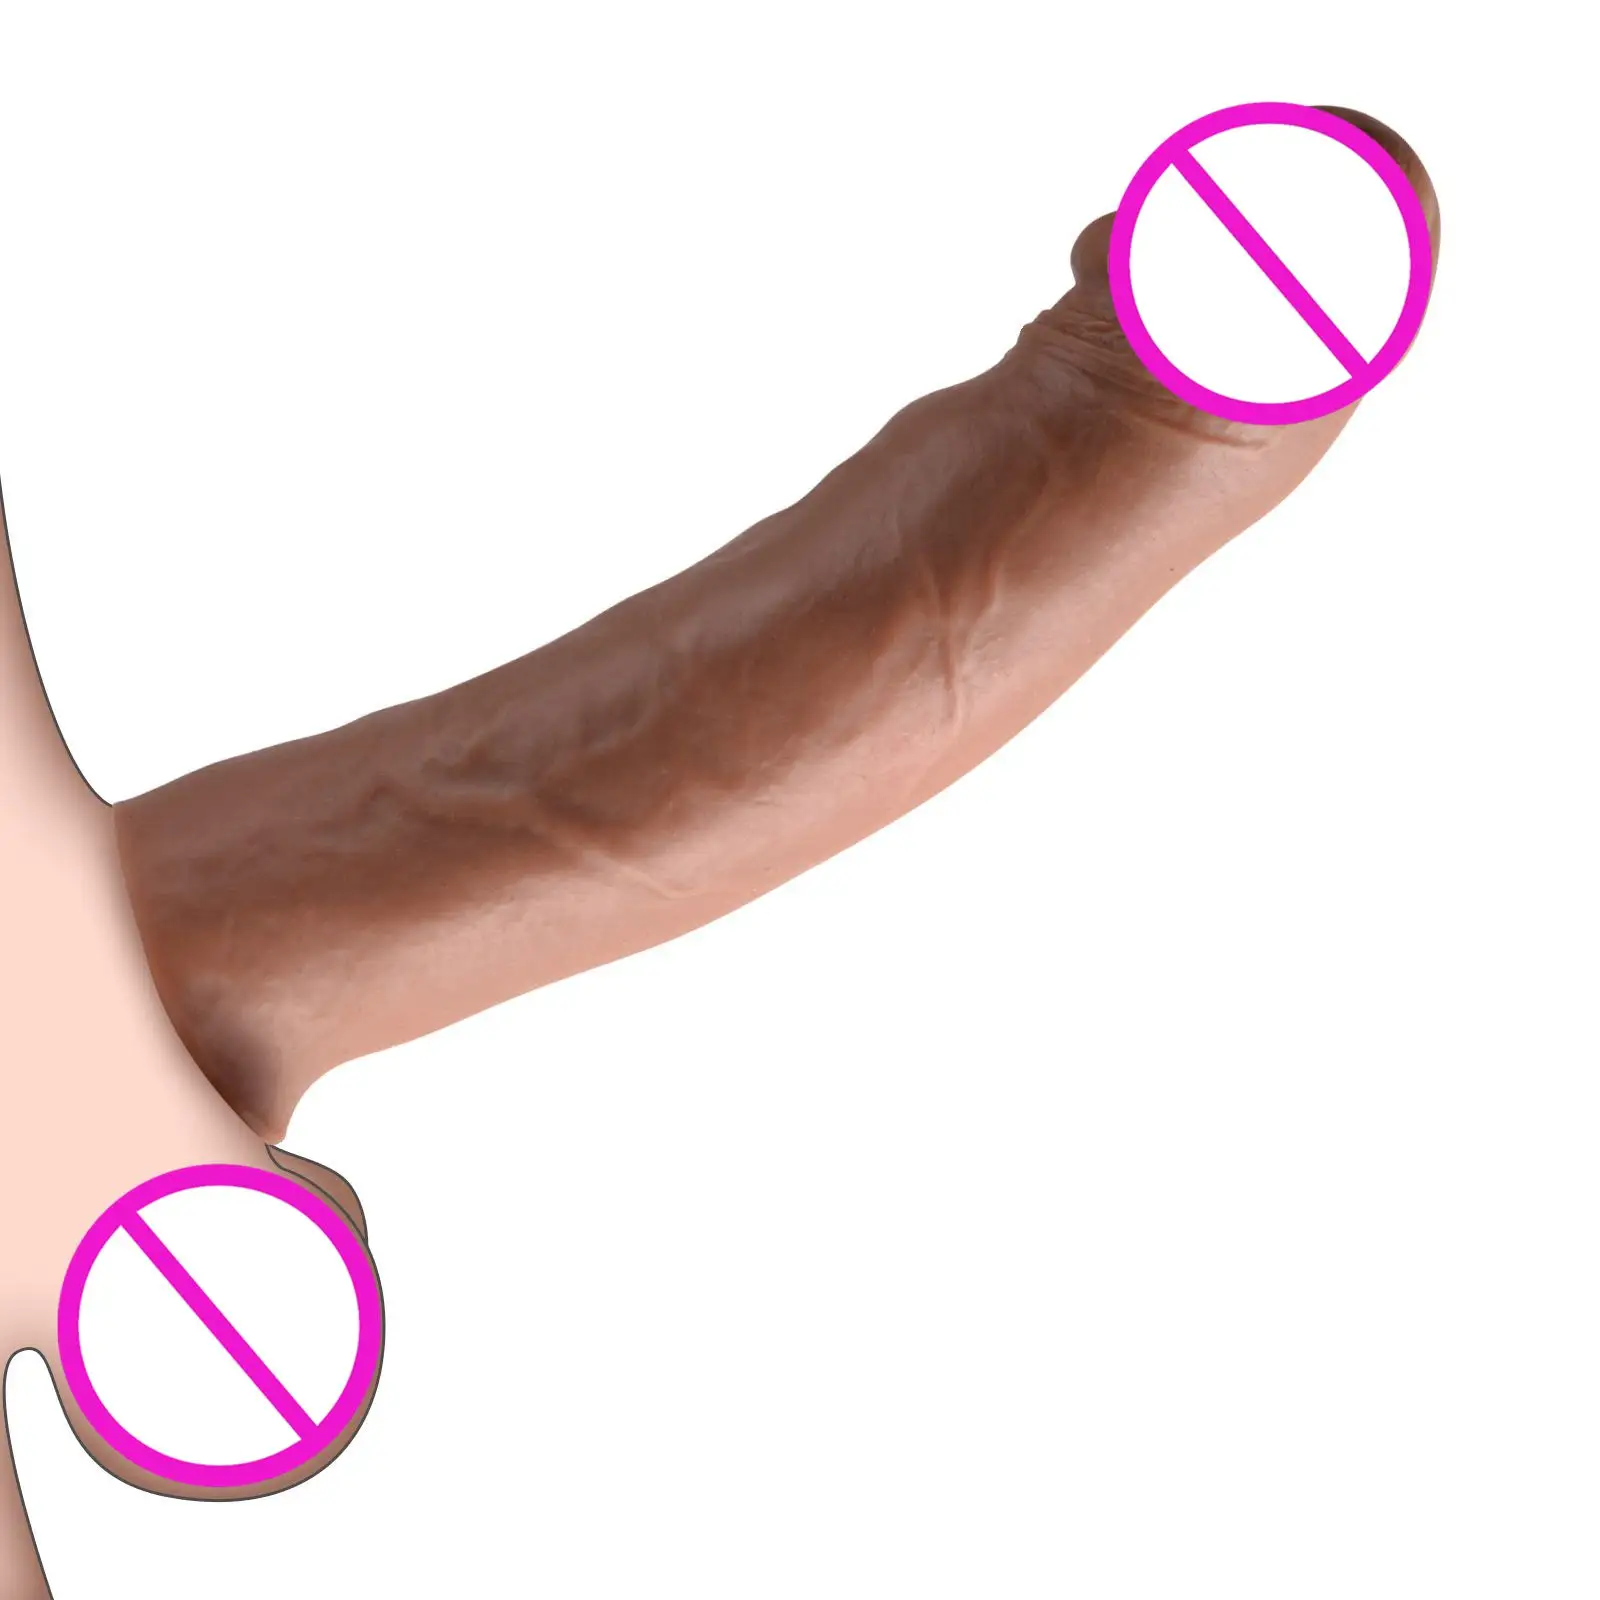 ถุงยางอนามัยสำหรับผู้ชายเสริมสร้างการแข็งตัวของอวัยวะเพศชายช่วยบรรเทาอาการหลั่งเร็วขึ้น